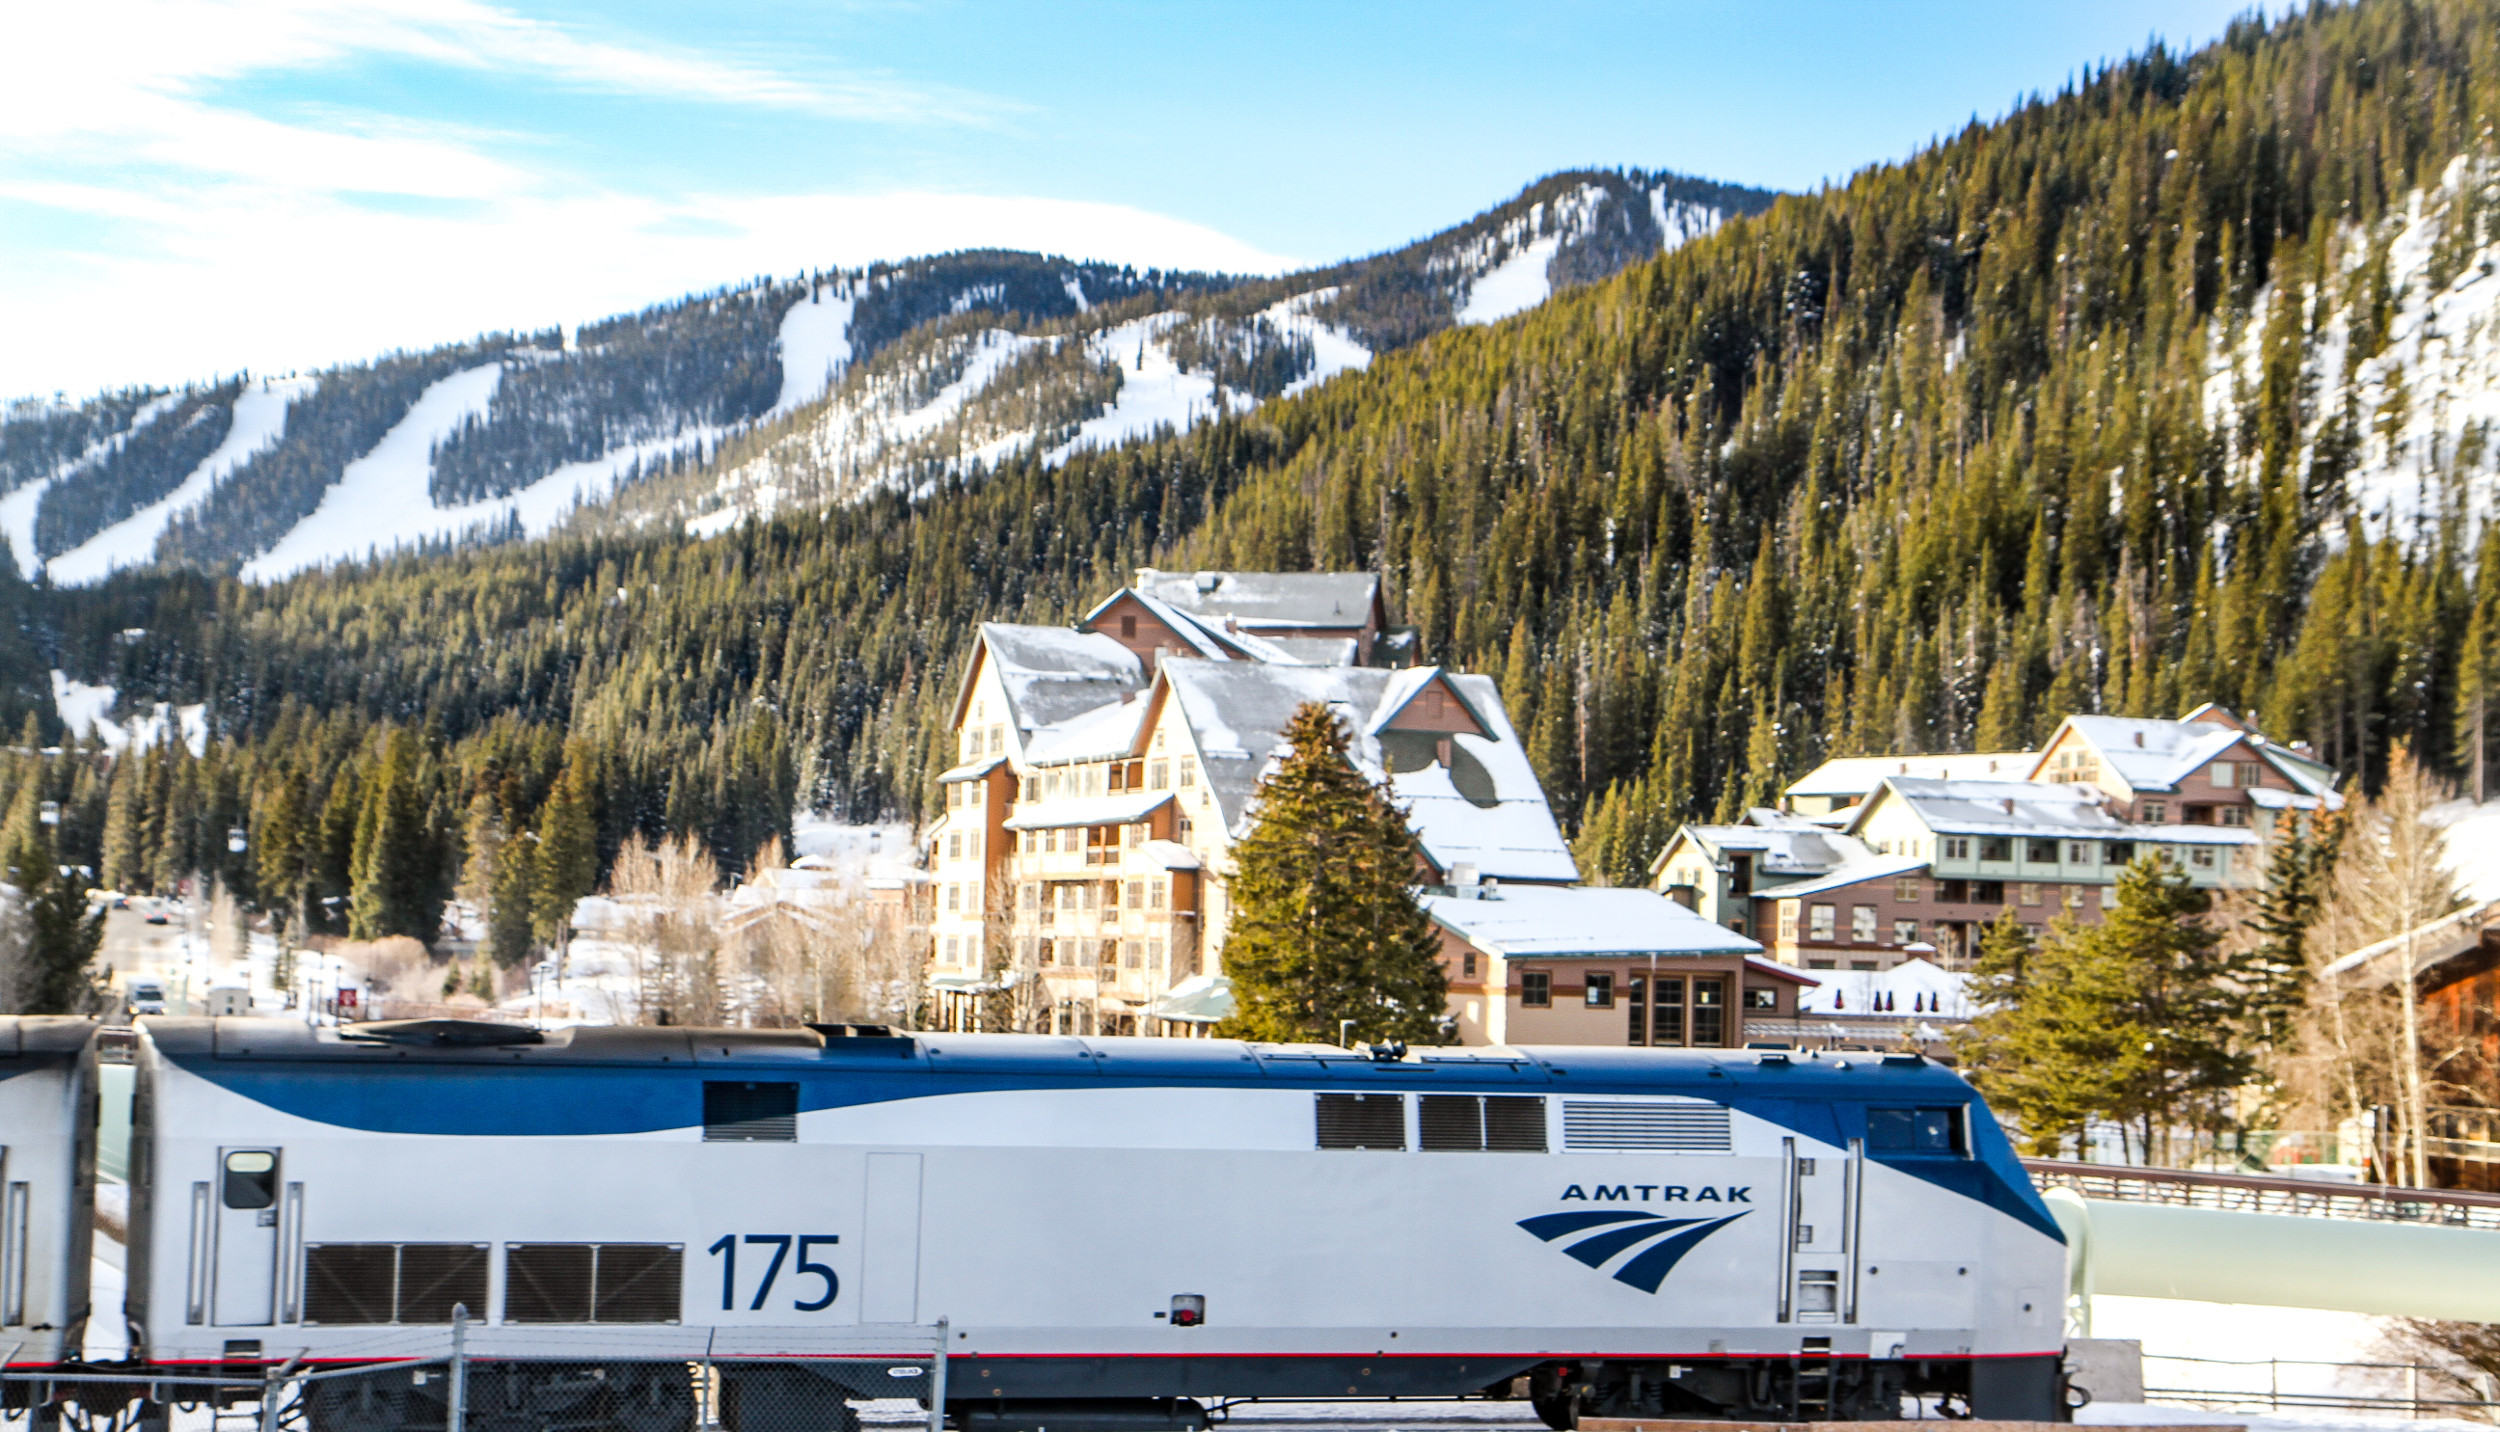 Amtrak train at the Winter Park Resort